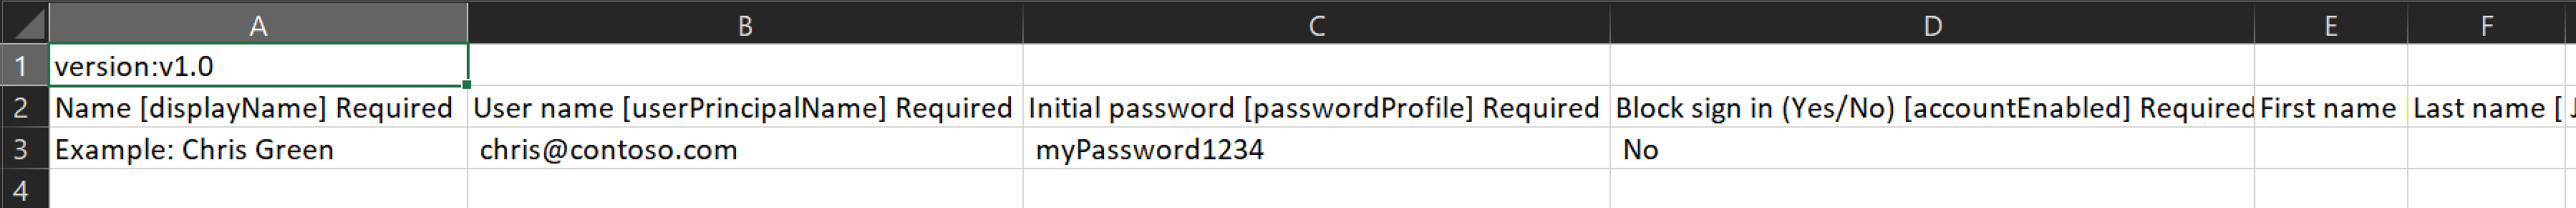 Screenshot che mostra un esempio del file CSV contenente i nomi e gli ID degli utenti da creare.